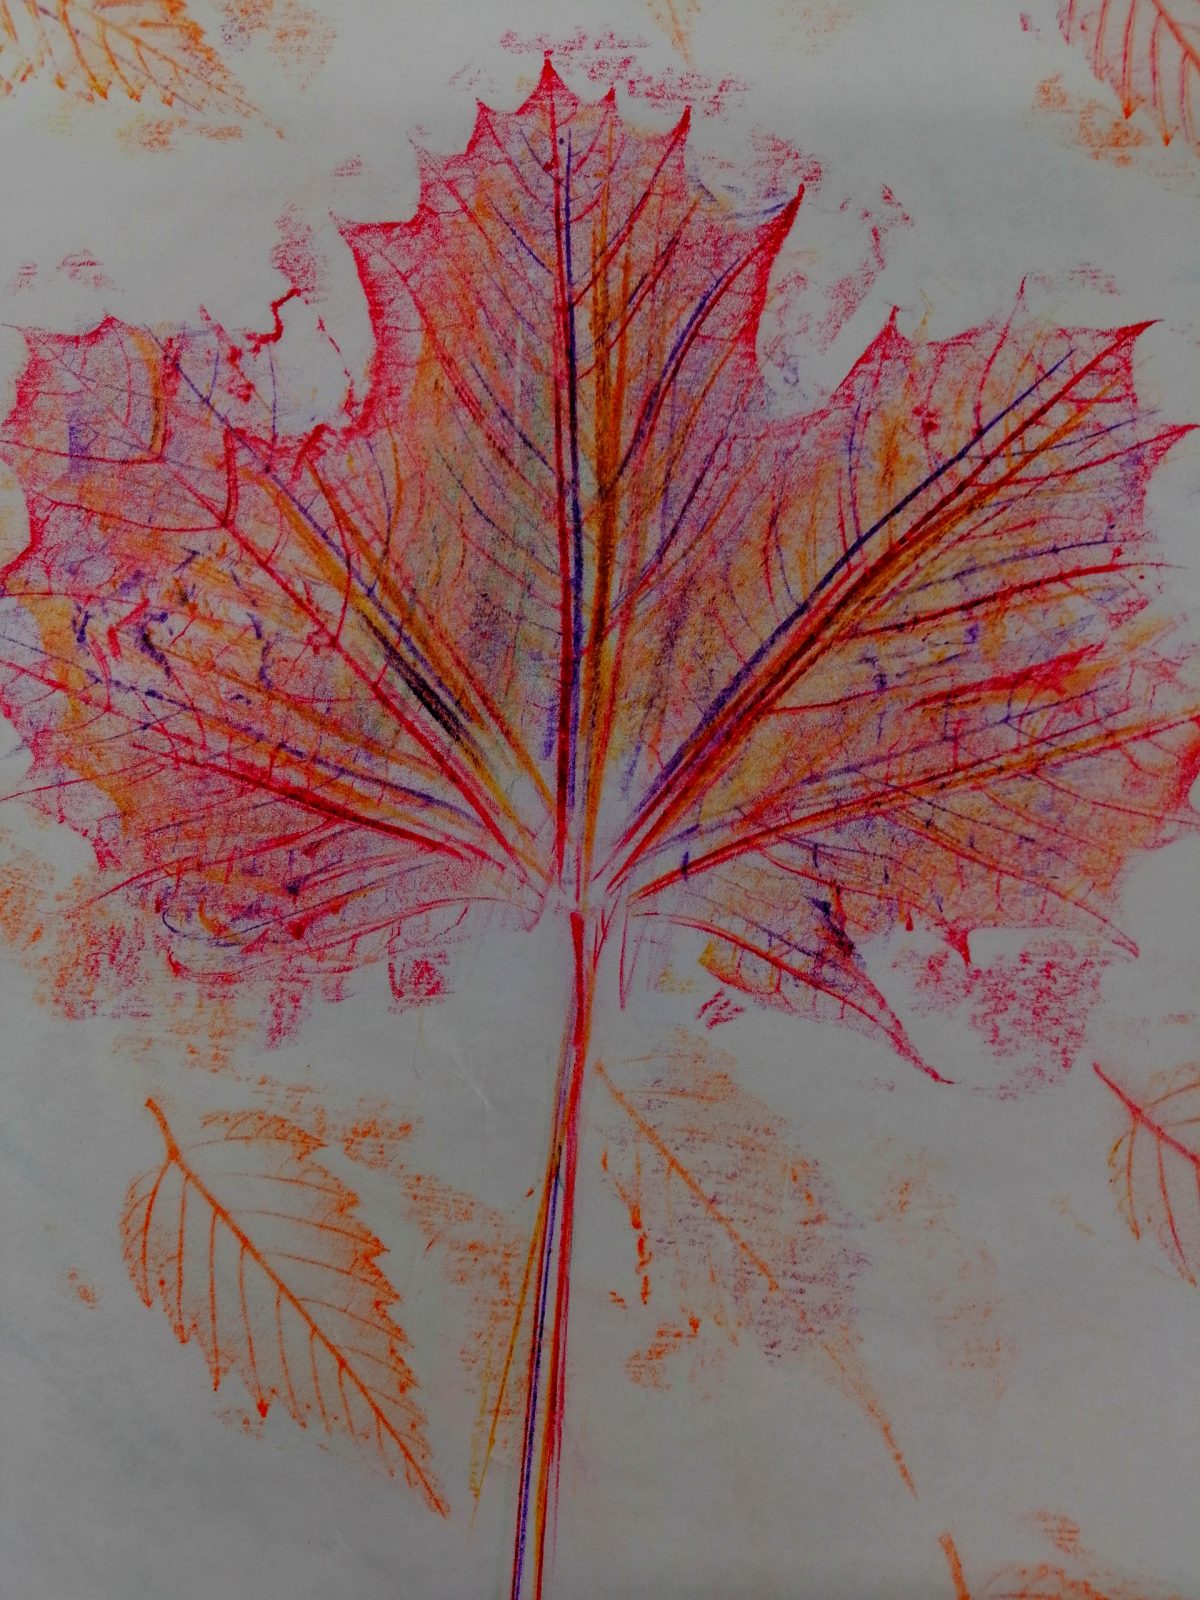 Kompozycja plastyczna struktury jesiennego liścia w układzie centralnym i rytmicznym Praca wykonana w technice frotażu z użyciem barw ciepłych.